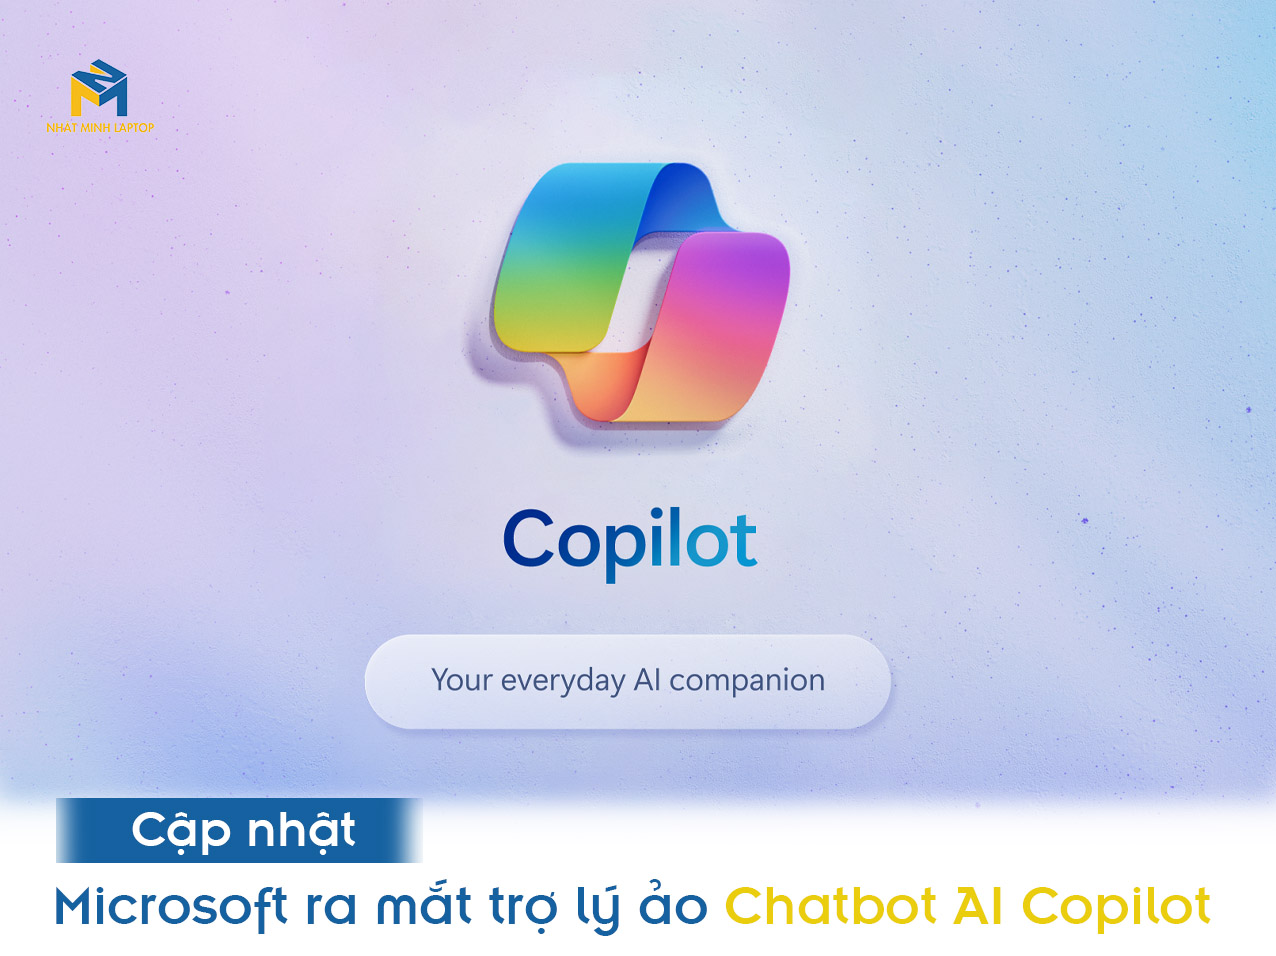 Microsoft ra mắt trợ lý ảo Chatbot AI Copilot, tính năng tương tự Chat GPT